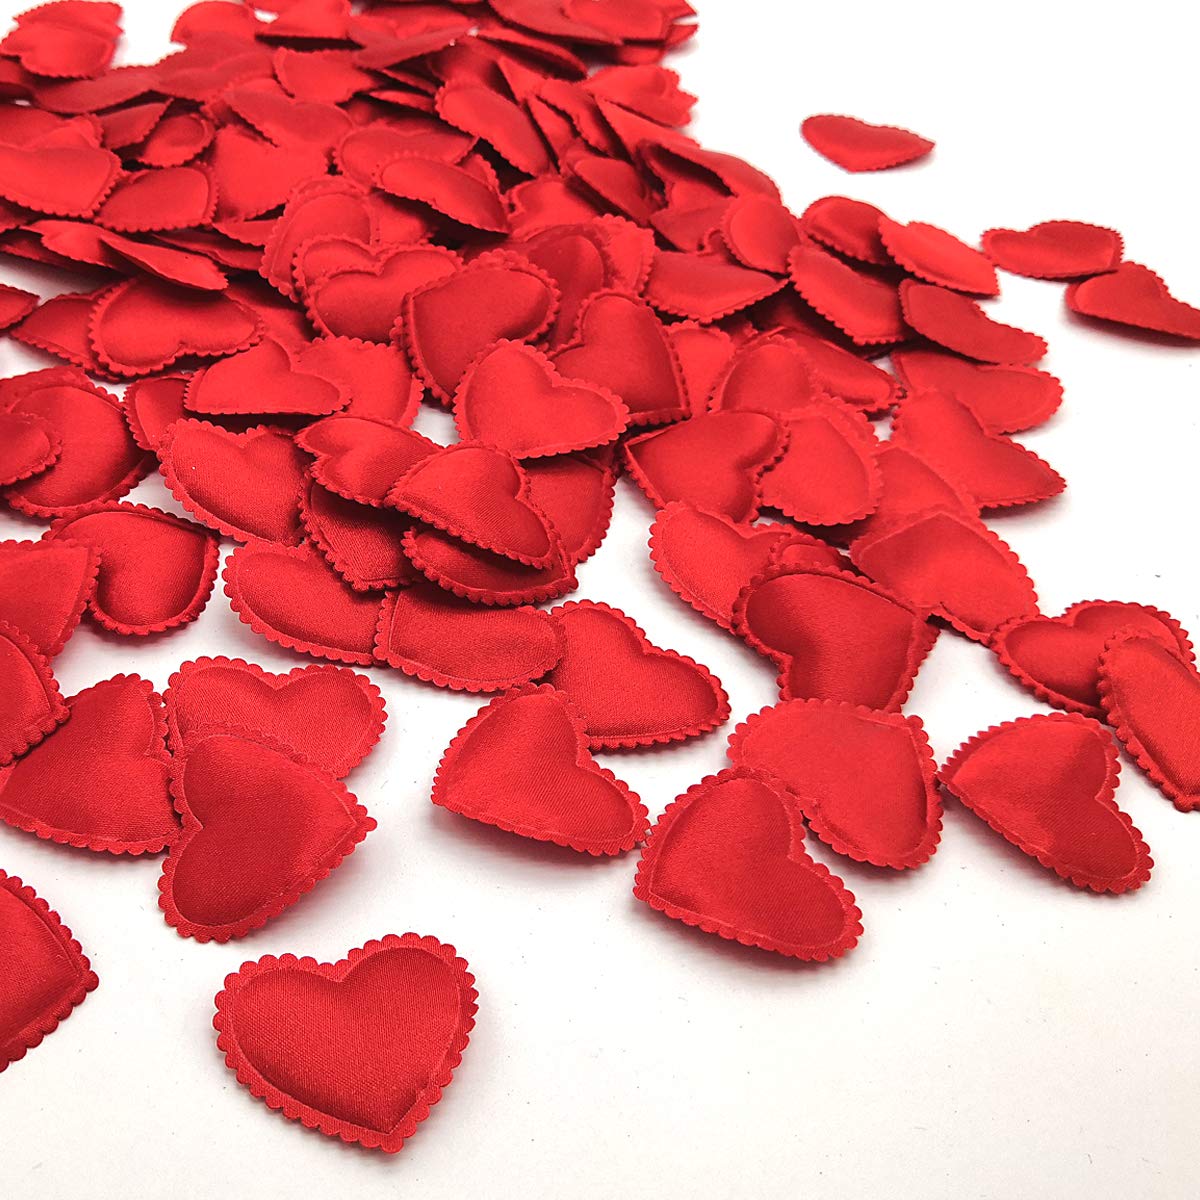 Mua Grunyia Heart Confetti Decoration - Romantic Decor for ...